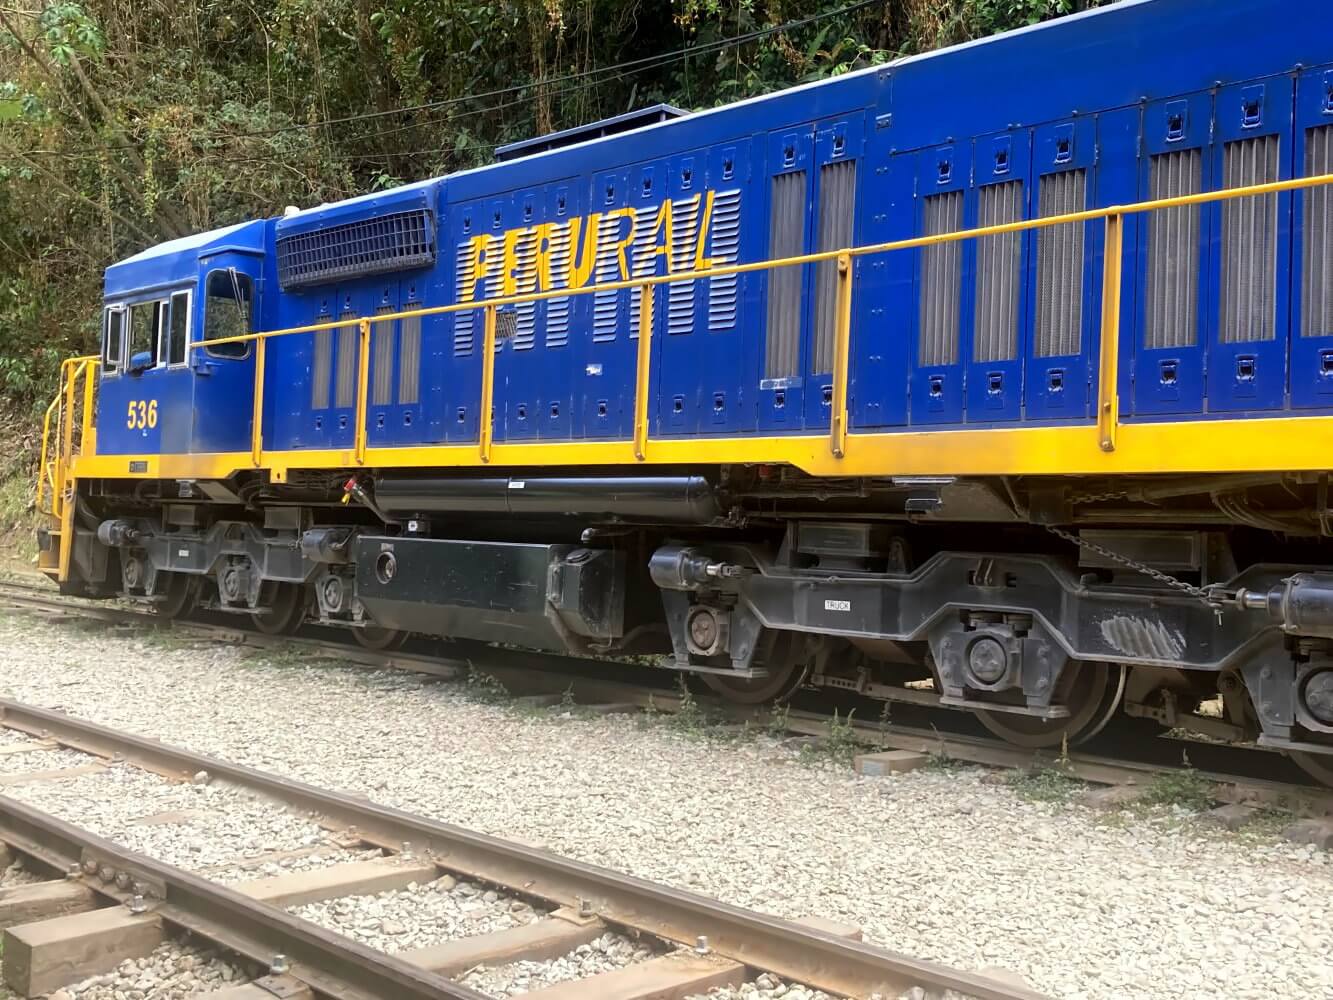 Perurail Eisenbahnwagon auf der Strecke nach Machu Picchu.